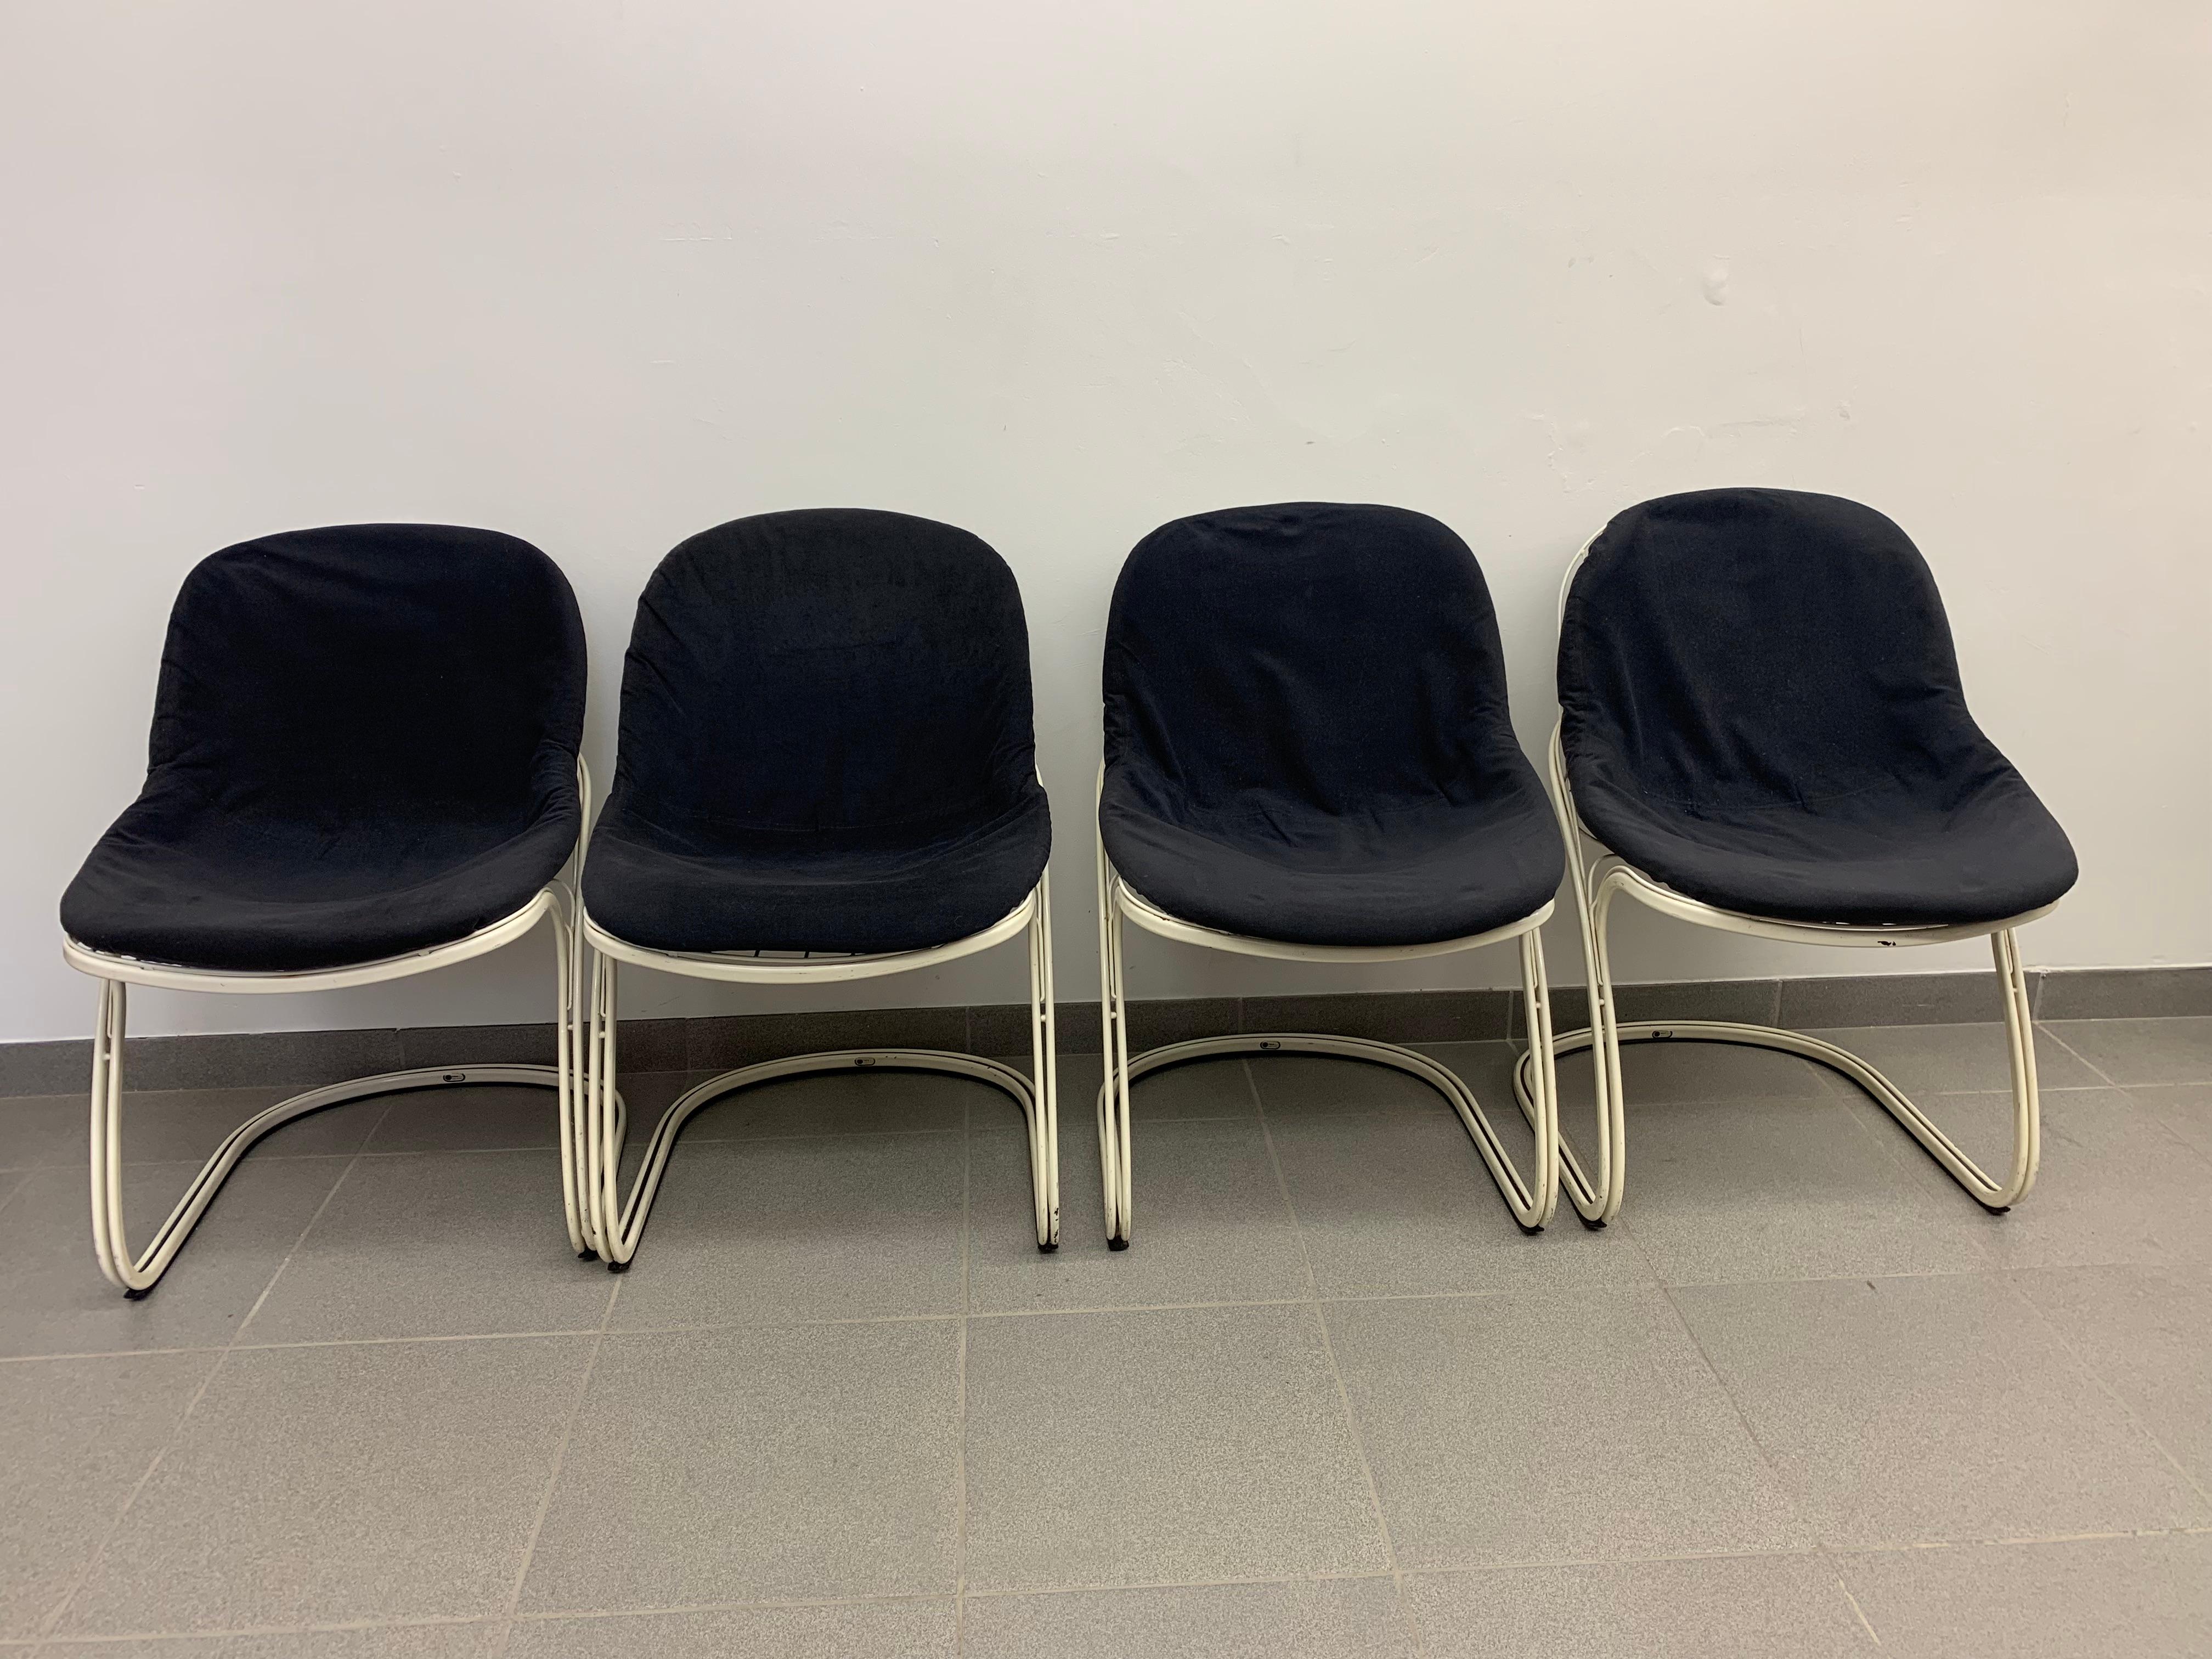 Chaises Sabrina par Gastone Rinaldi pour Thema, 1970. Ces chaises de salle à manger du milieu du siècle sont très confortables grâce à leur revêtement noir et à leur piétement luge. MATERIAL : métal blanc et tissu noir. Dimensions : h X l X p = 82 X